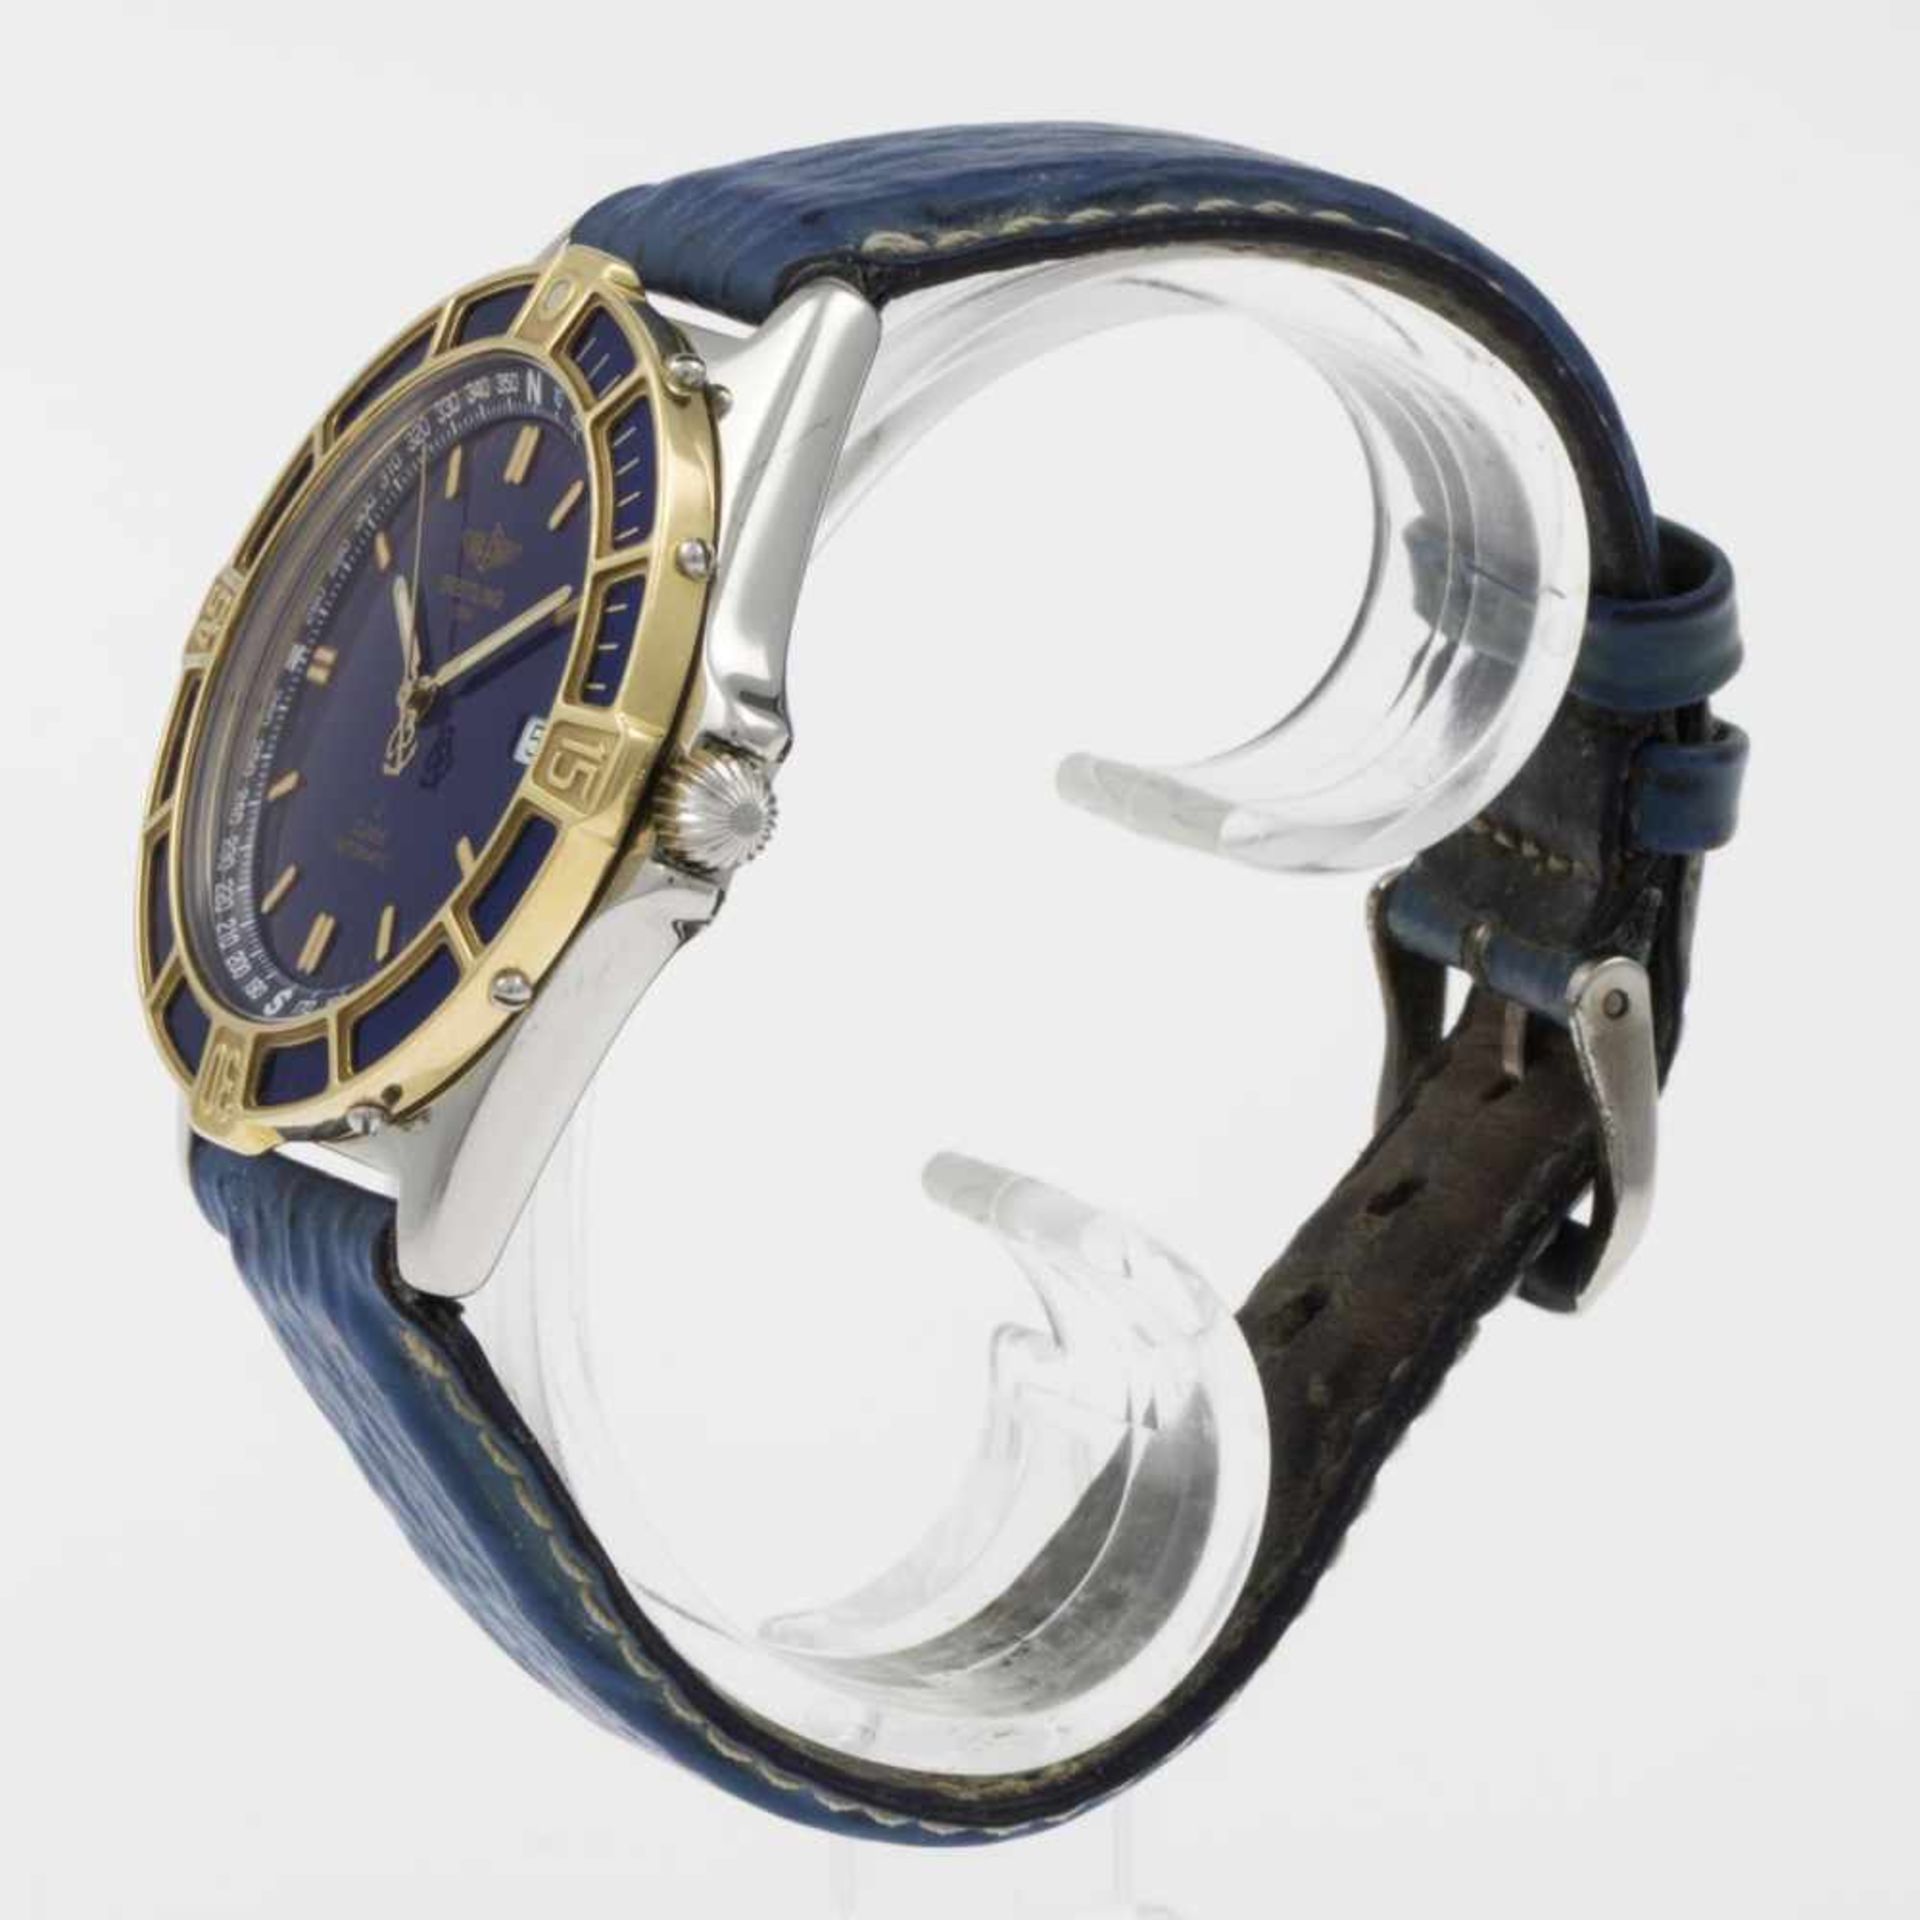 Breitling-Armbanduhr J ClassStahlgehäuse. Einseitig drehbare Lünette aus Gelbgold mit Segmenten - Bild 2 aus 4